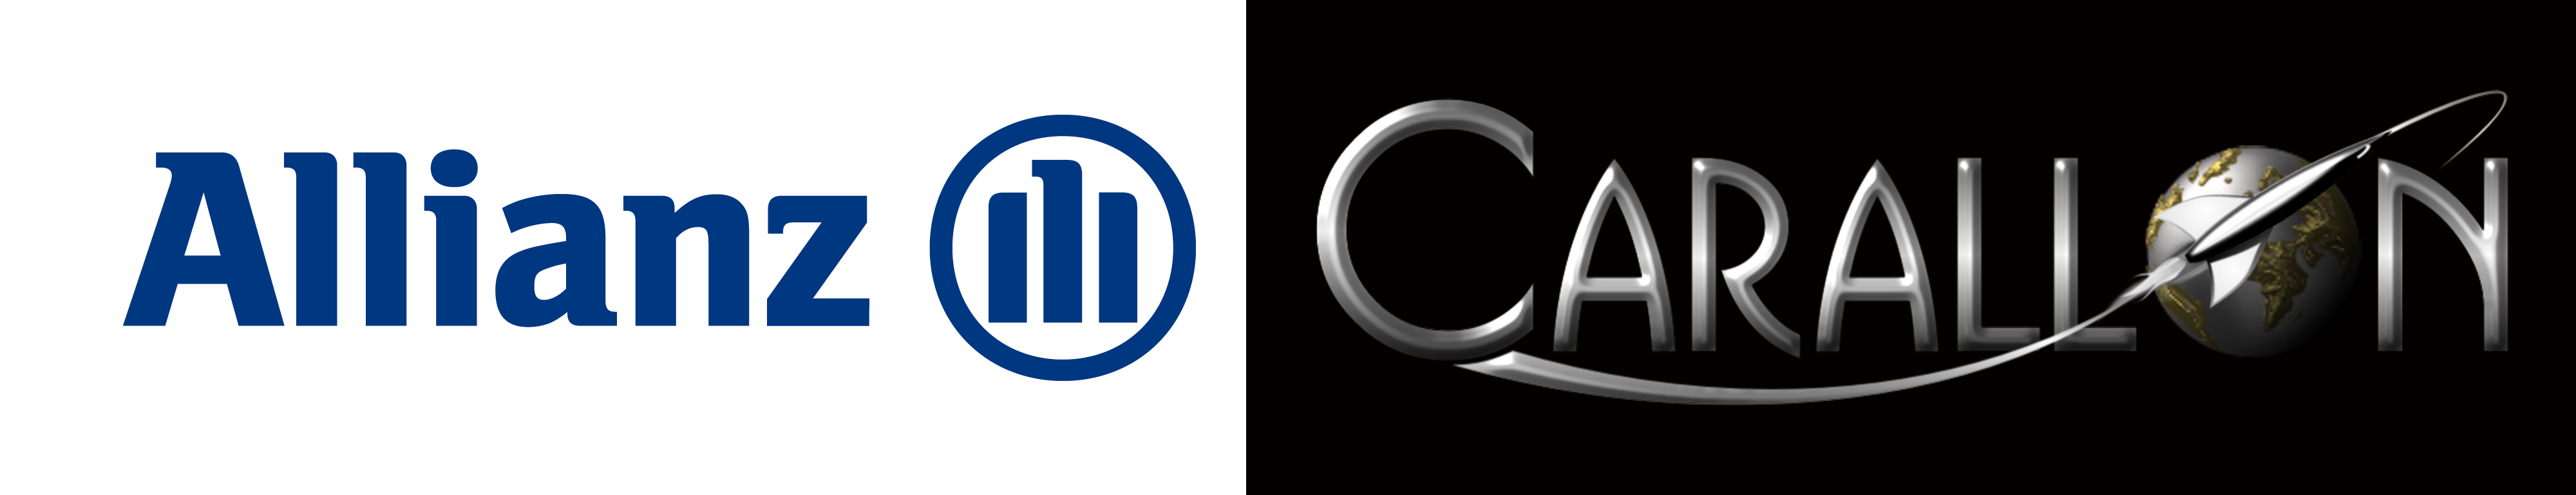 Allianz Carallon logos